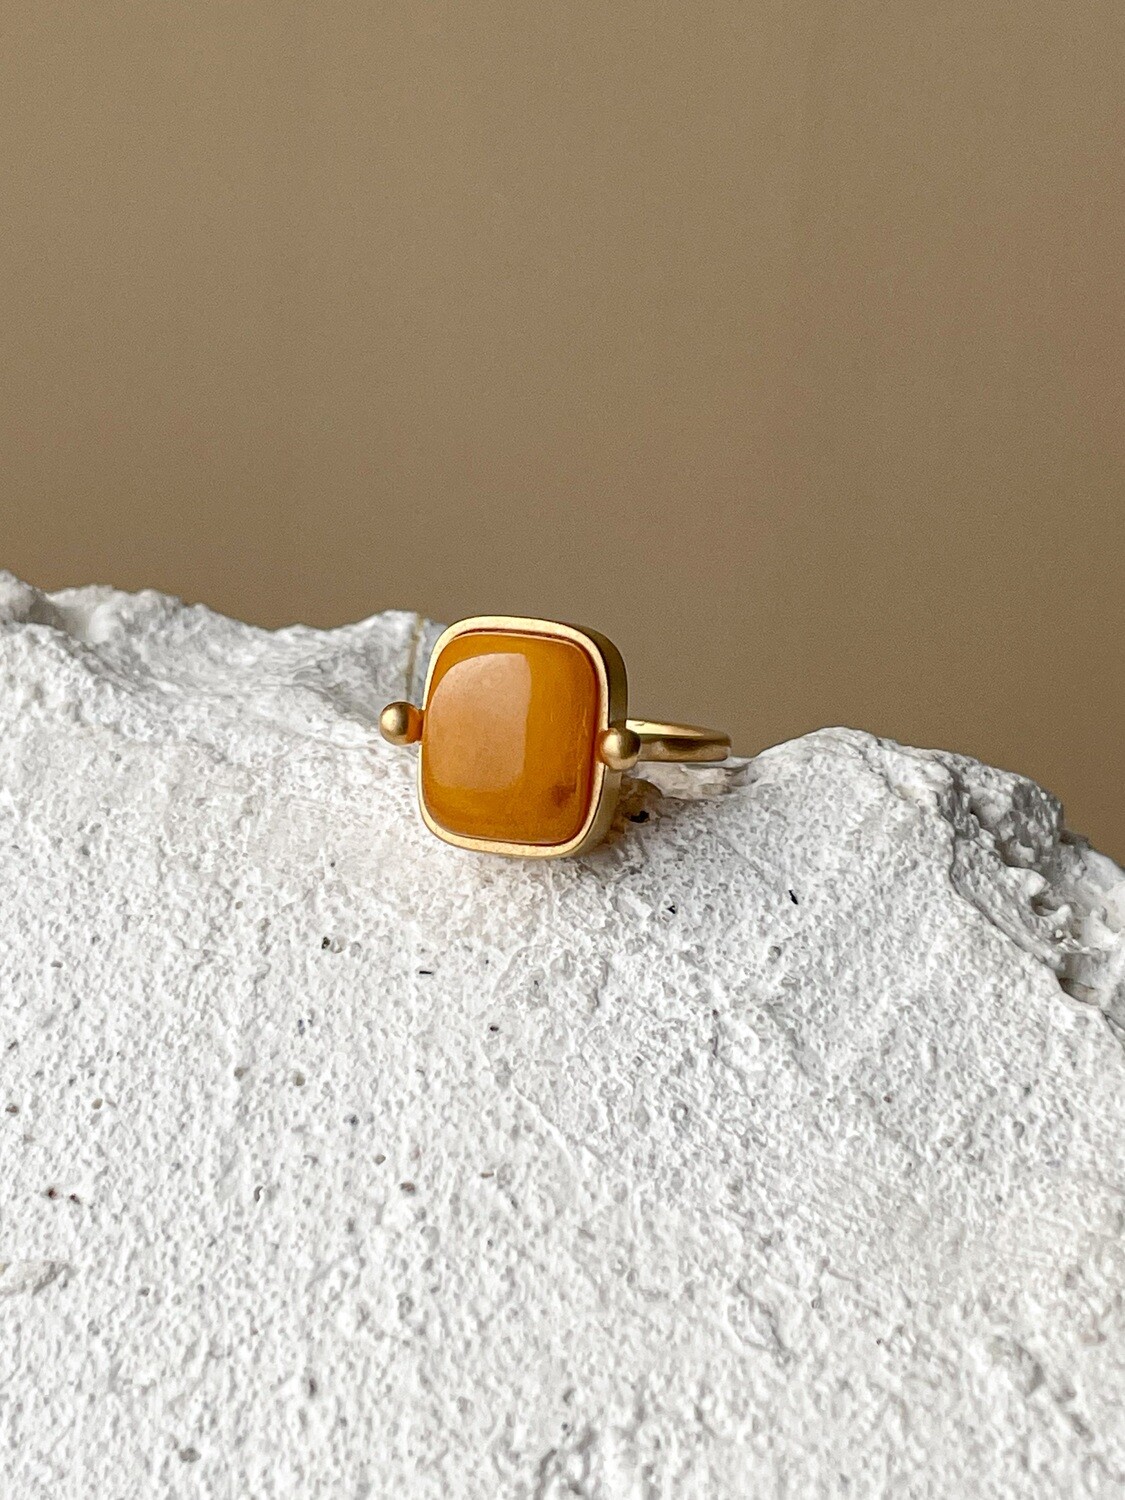 Кольцо в винтажном стиле с медовым янтарем, размер 15,25